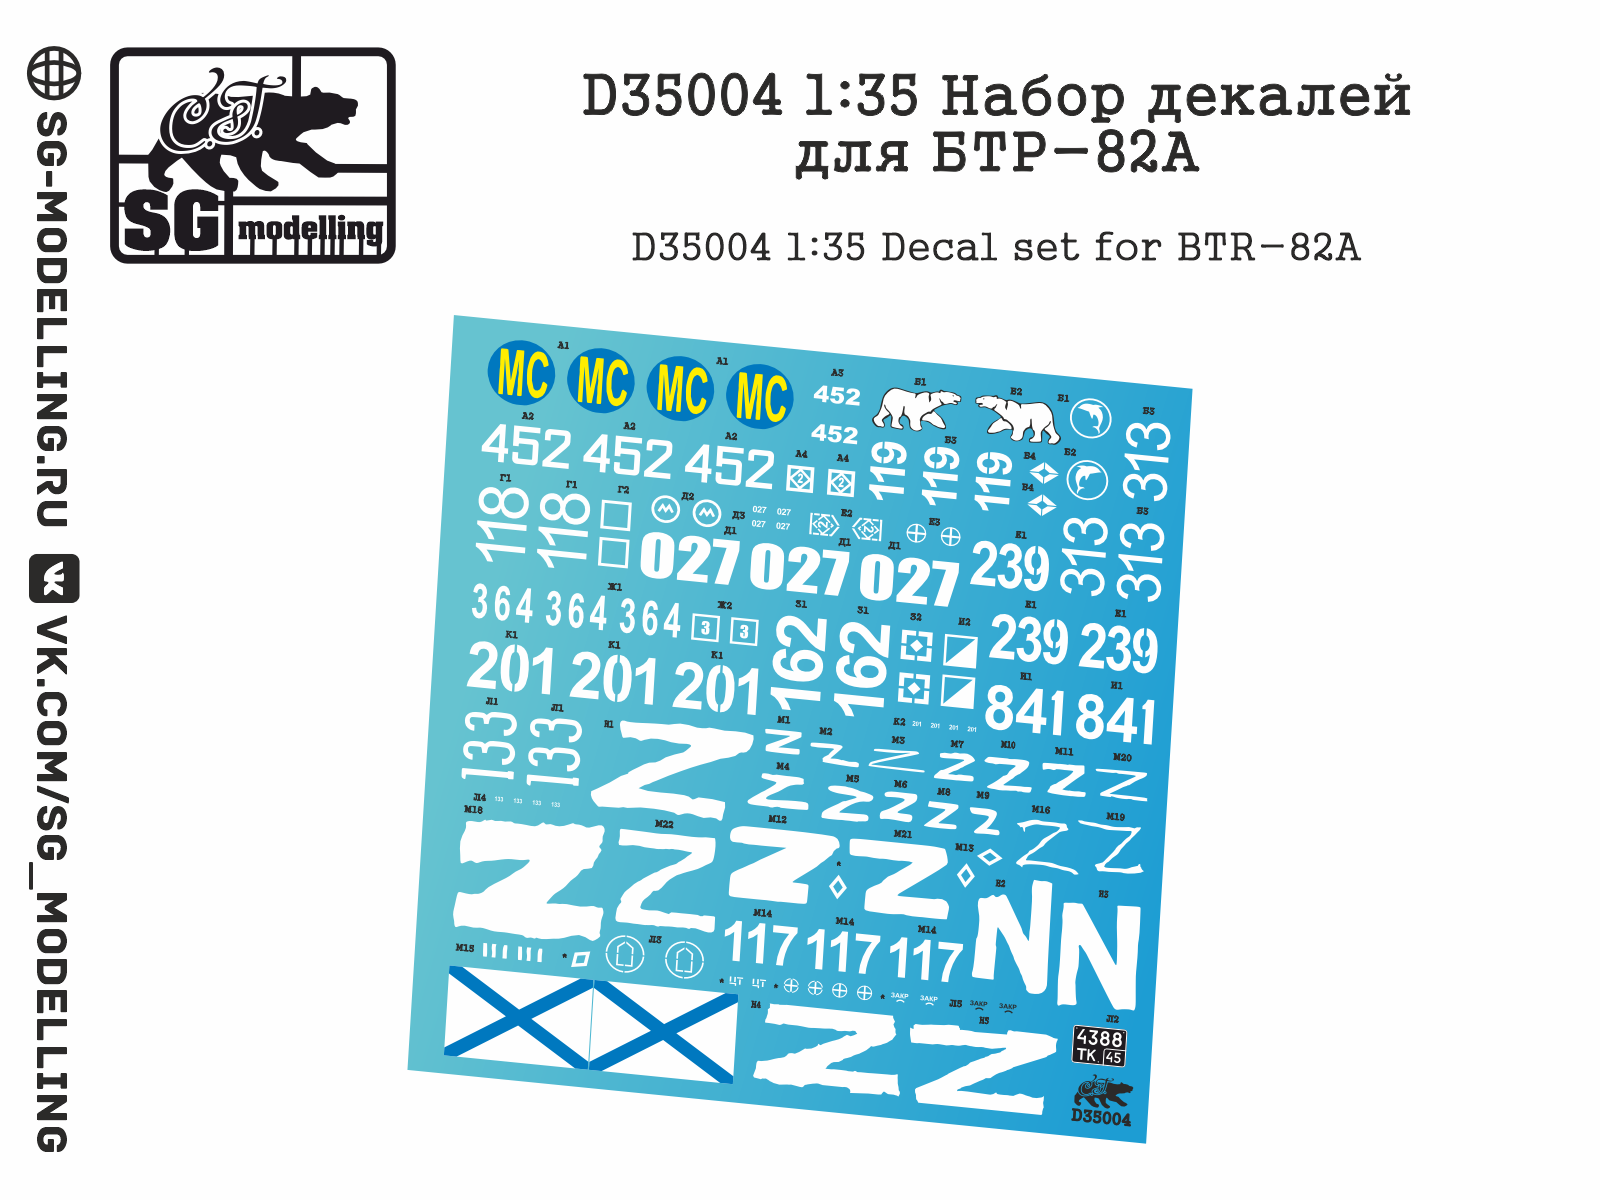 D35004  декали  Набор декалей для БТР-82А  (1:35)